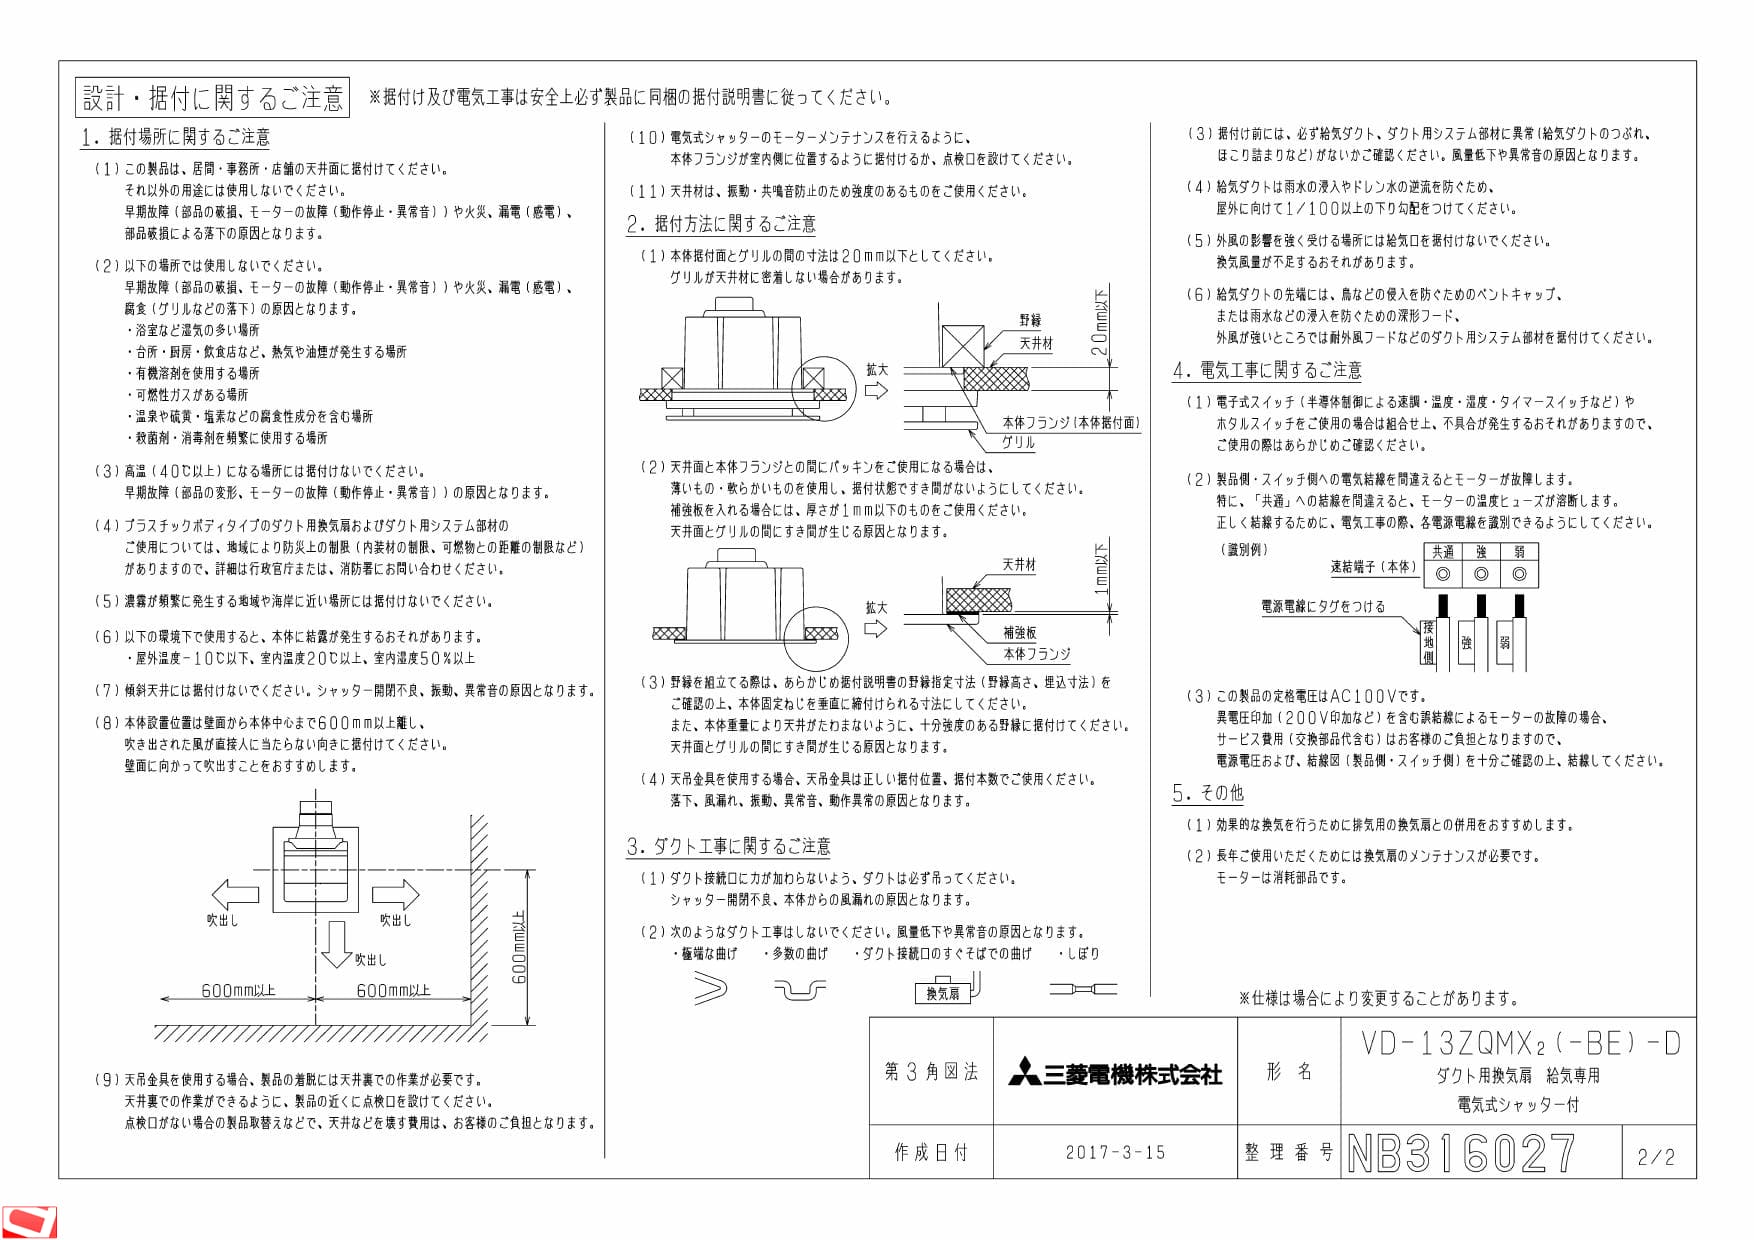 三菱電機 VD-13ZQMX2-BE-D納入仕様図 | 通販 プロストア ダイレクト